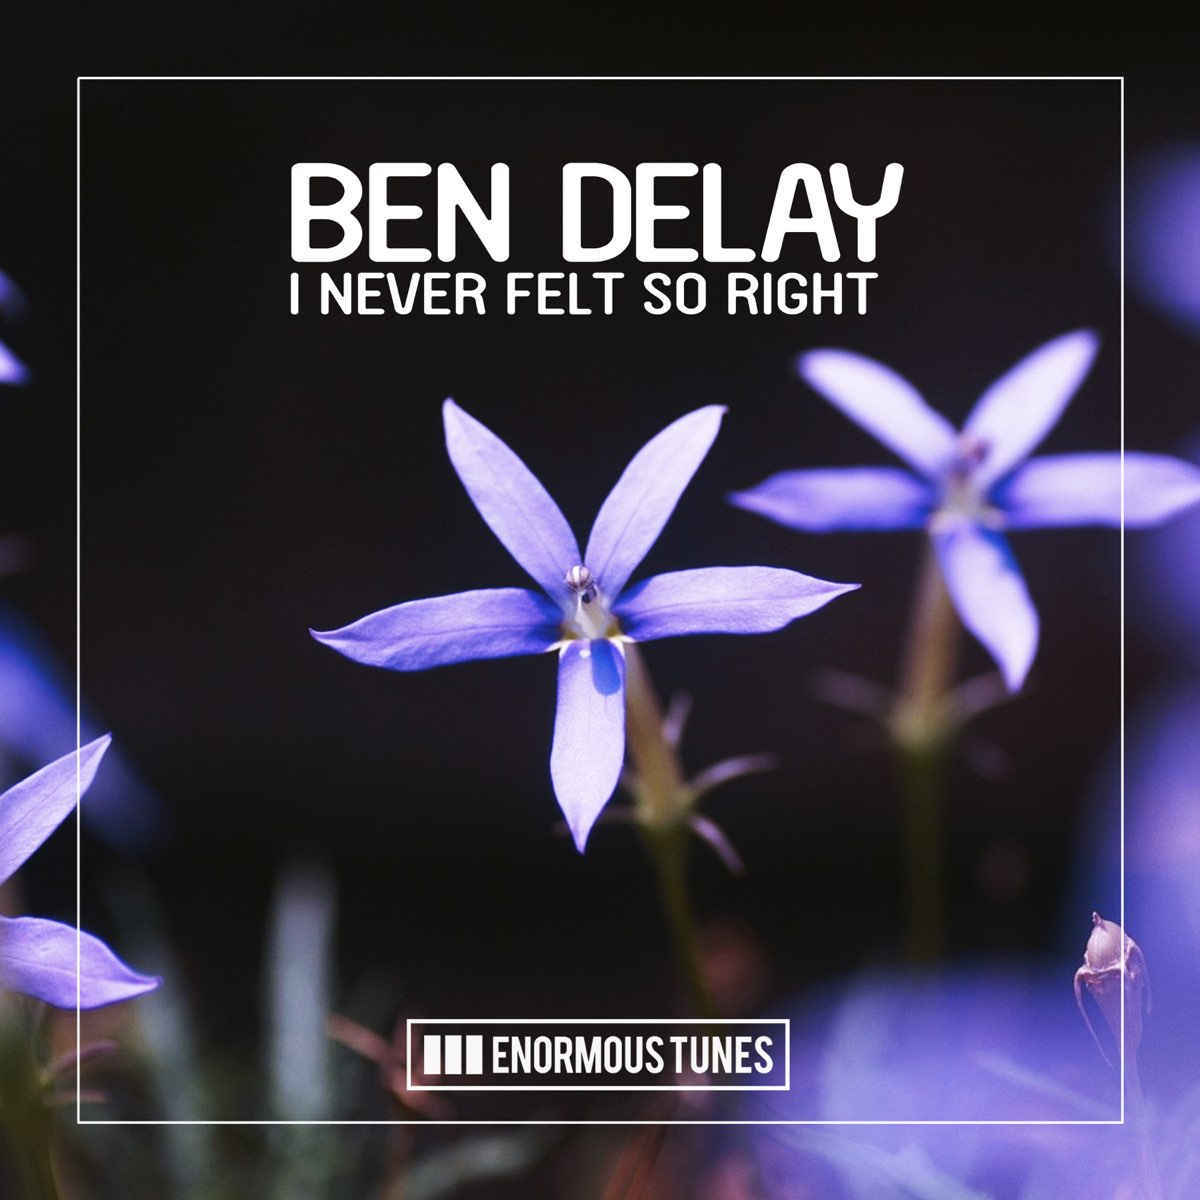 Ben delay feat. Ben delay i never felt so right. Ben delay - i never felt so right обложка. Ben delay i never felt so right Club Mix. I never felt so right (Original Mix) исполнитель.